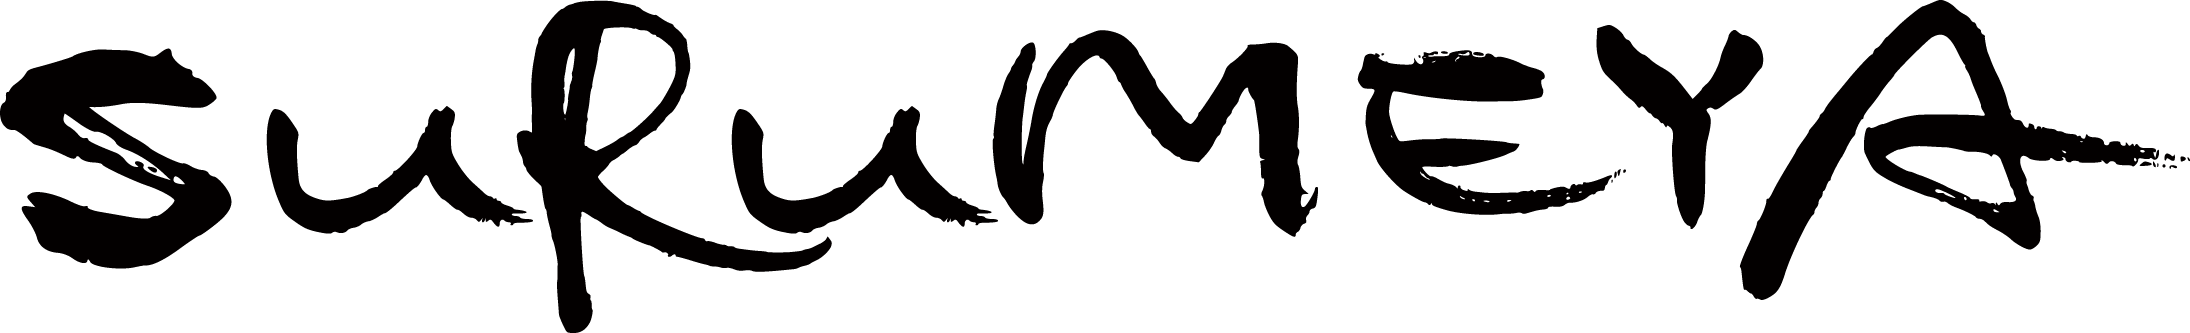 surumeya logo